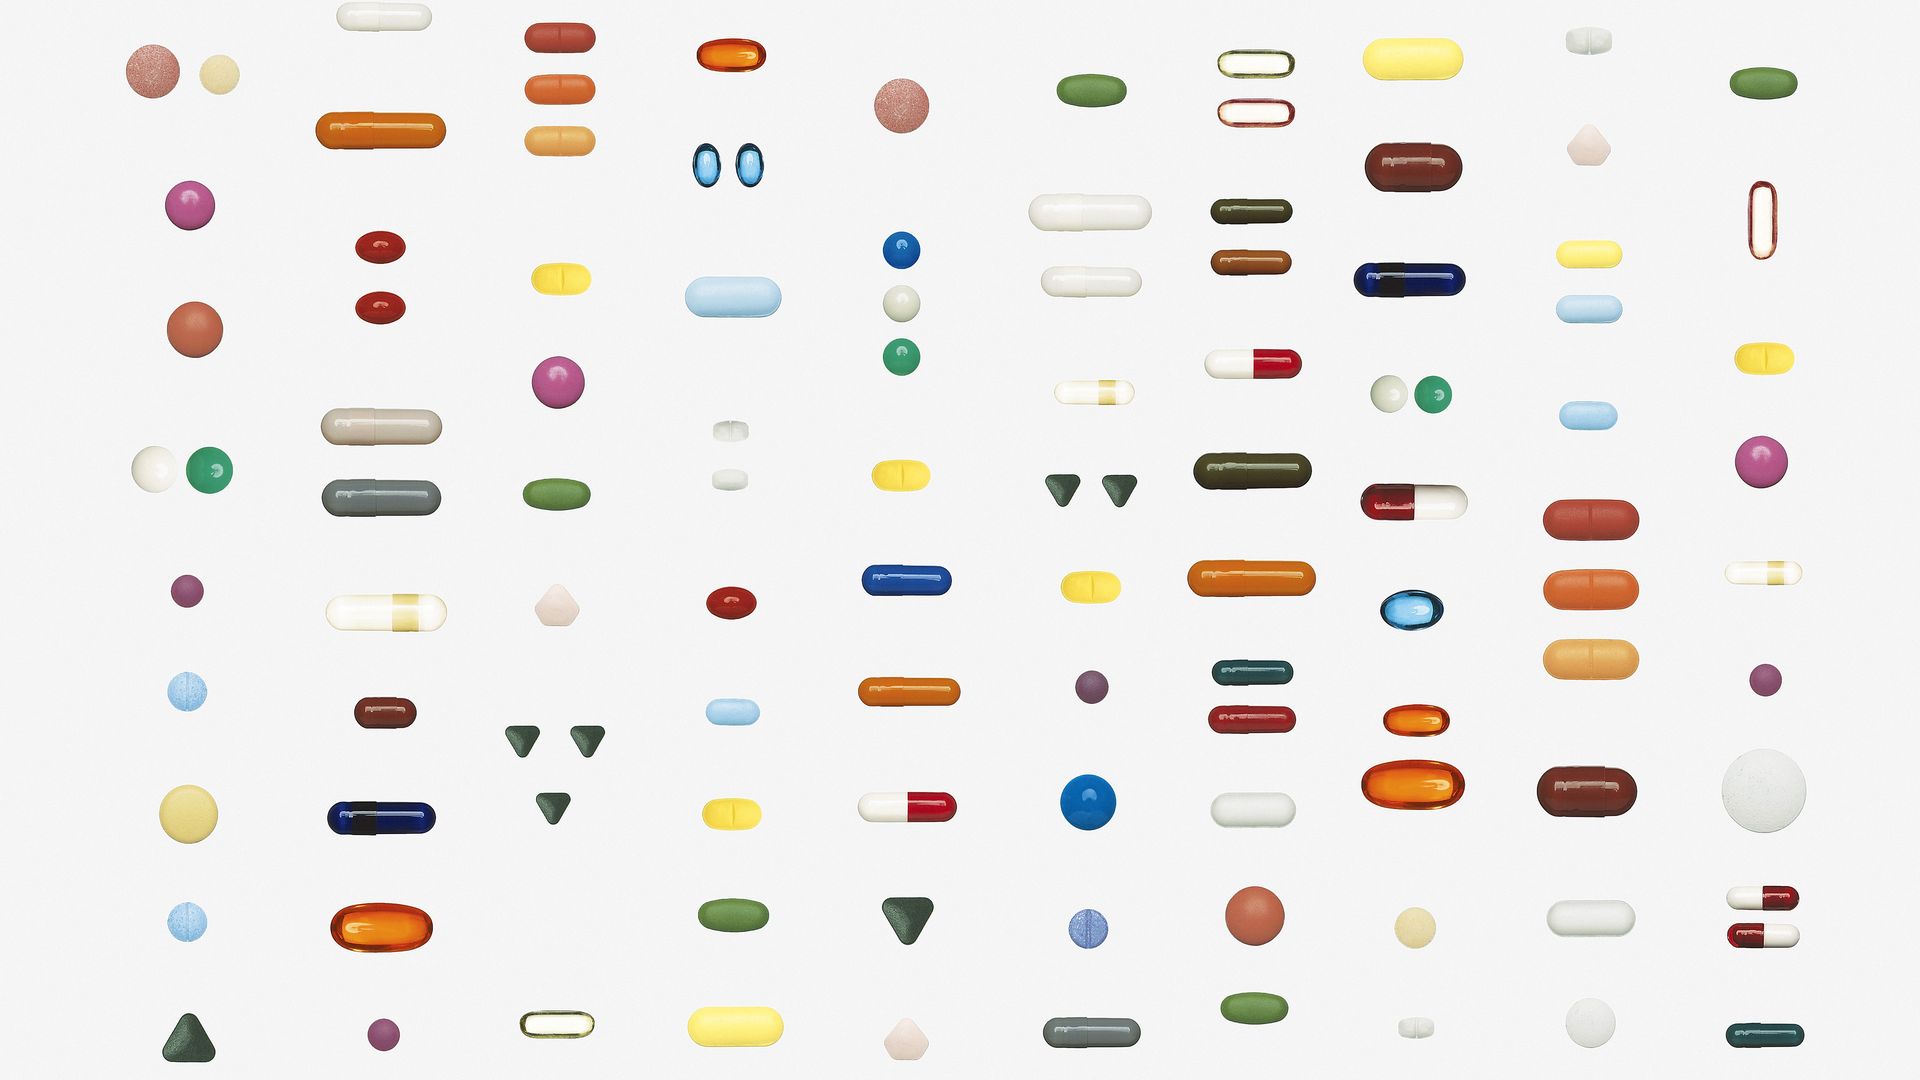 An organized group of pills